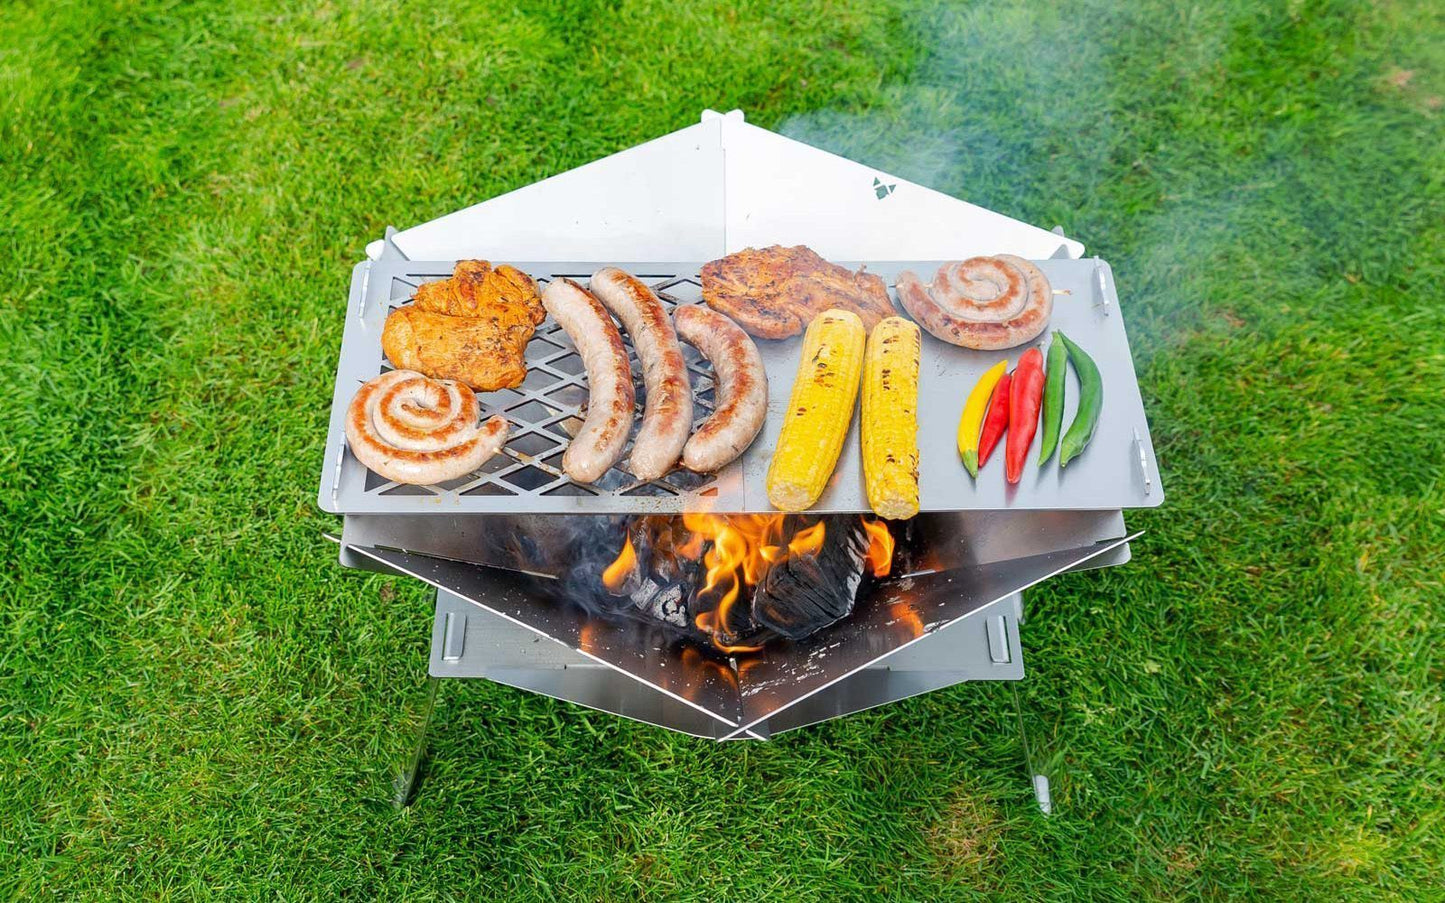 Fleisch und Gemüse wird auf einer zusammengesteckten Grillplatte über einer Feuerschale gegrillt die sich mit Erhöhung auf einem grünen Rasen befindet.